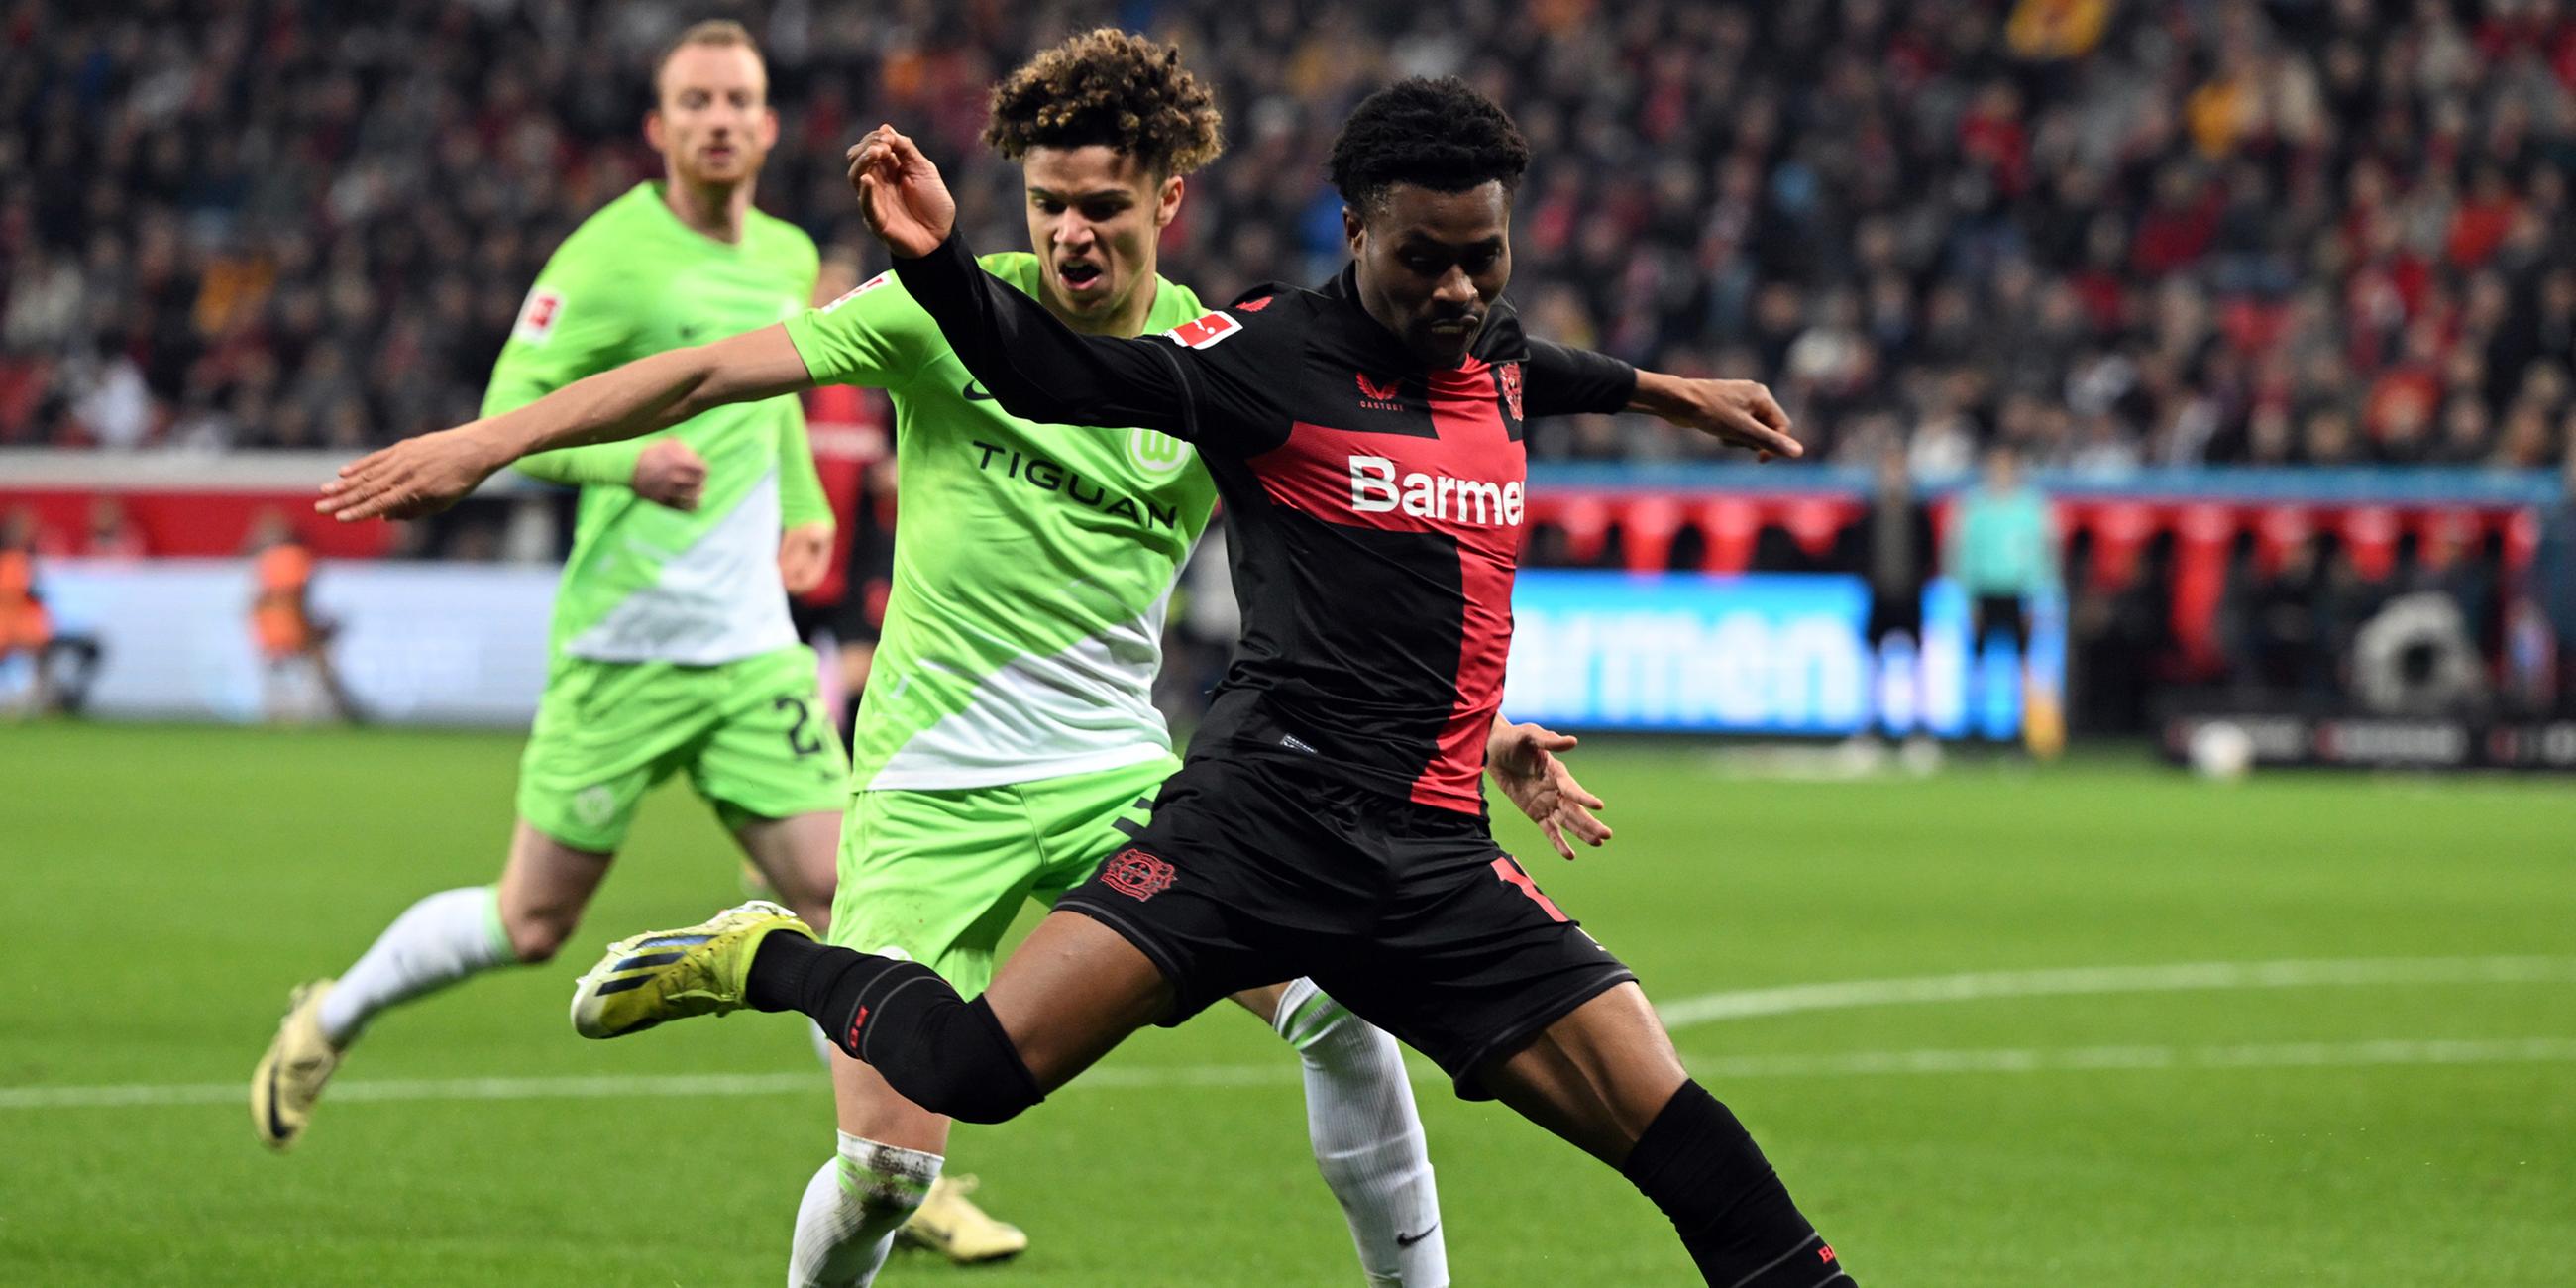 Leverkusens Nathan Tella (r) und Wolfsburgs Kevin Paredes kämpfen um den Ball.